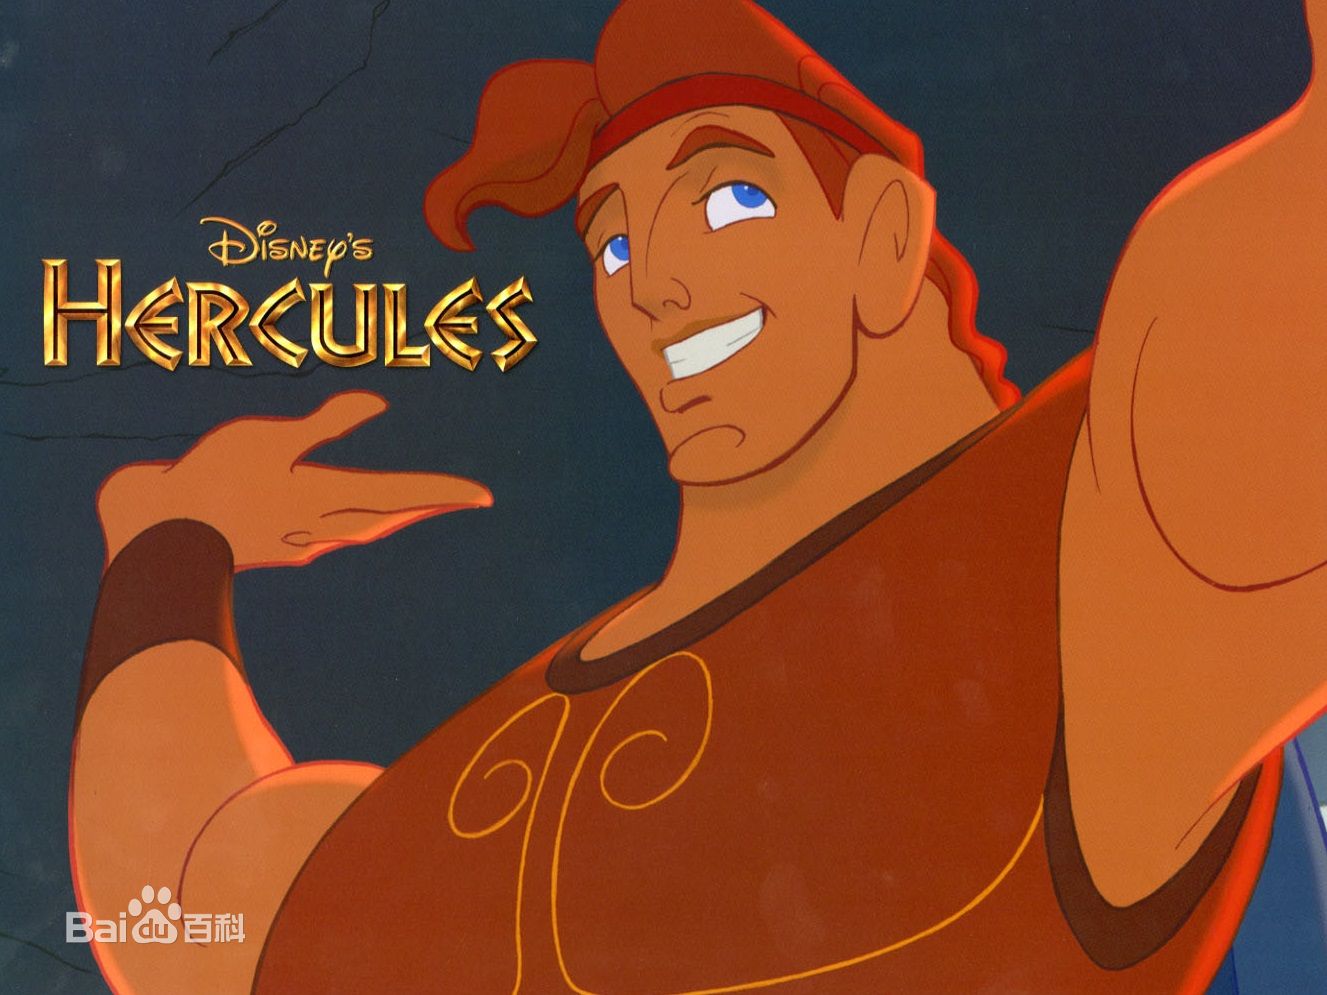 大力士海格力斯是迪士尼于1997年推出的第35部经典动画,改编自古希腊